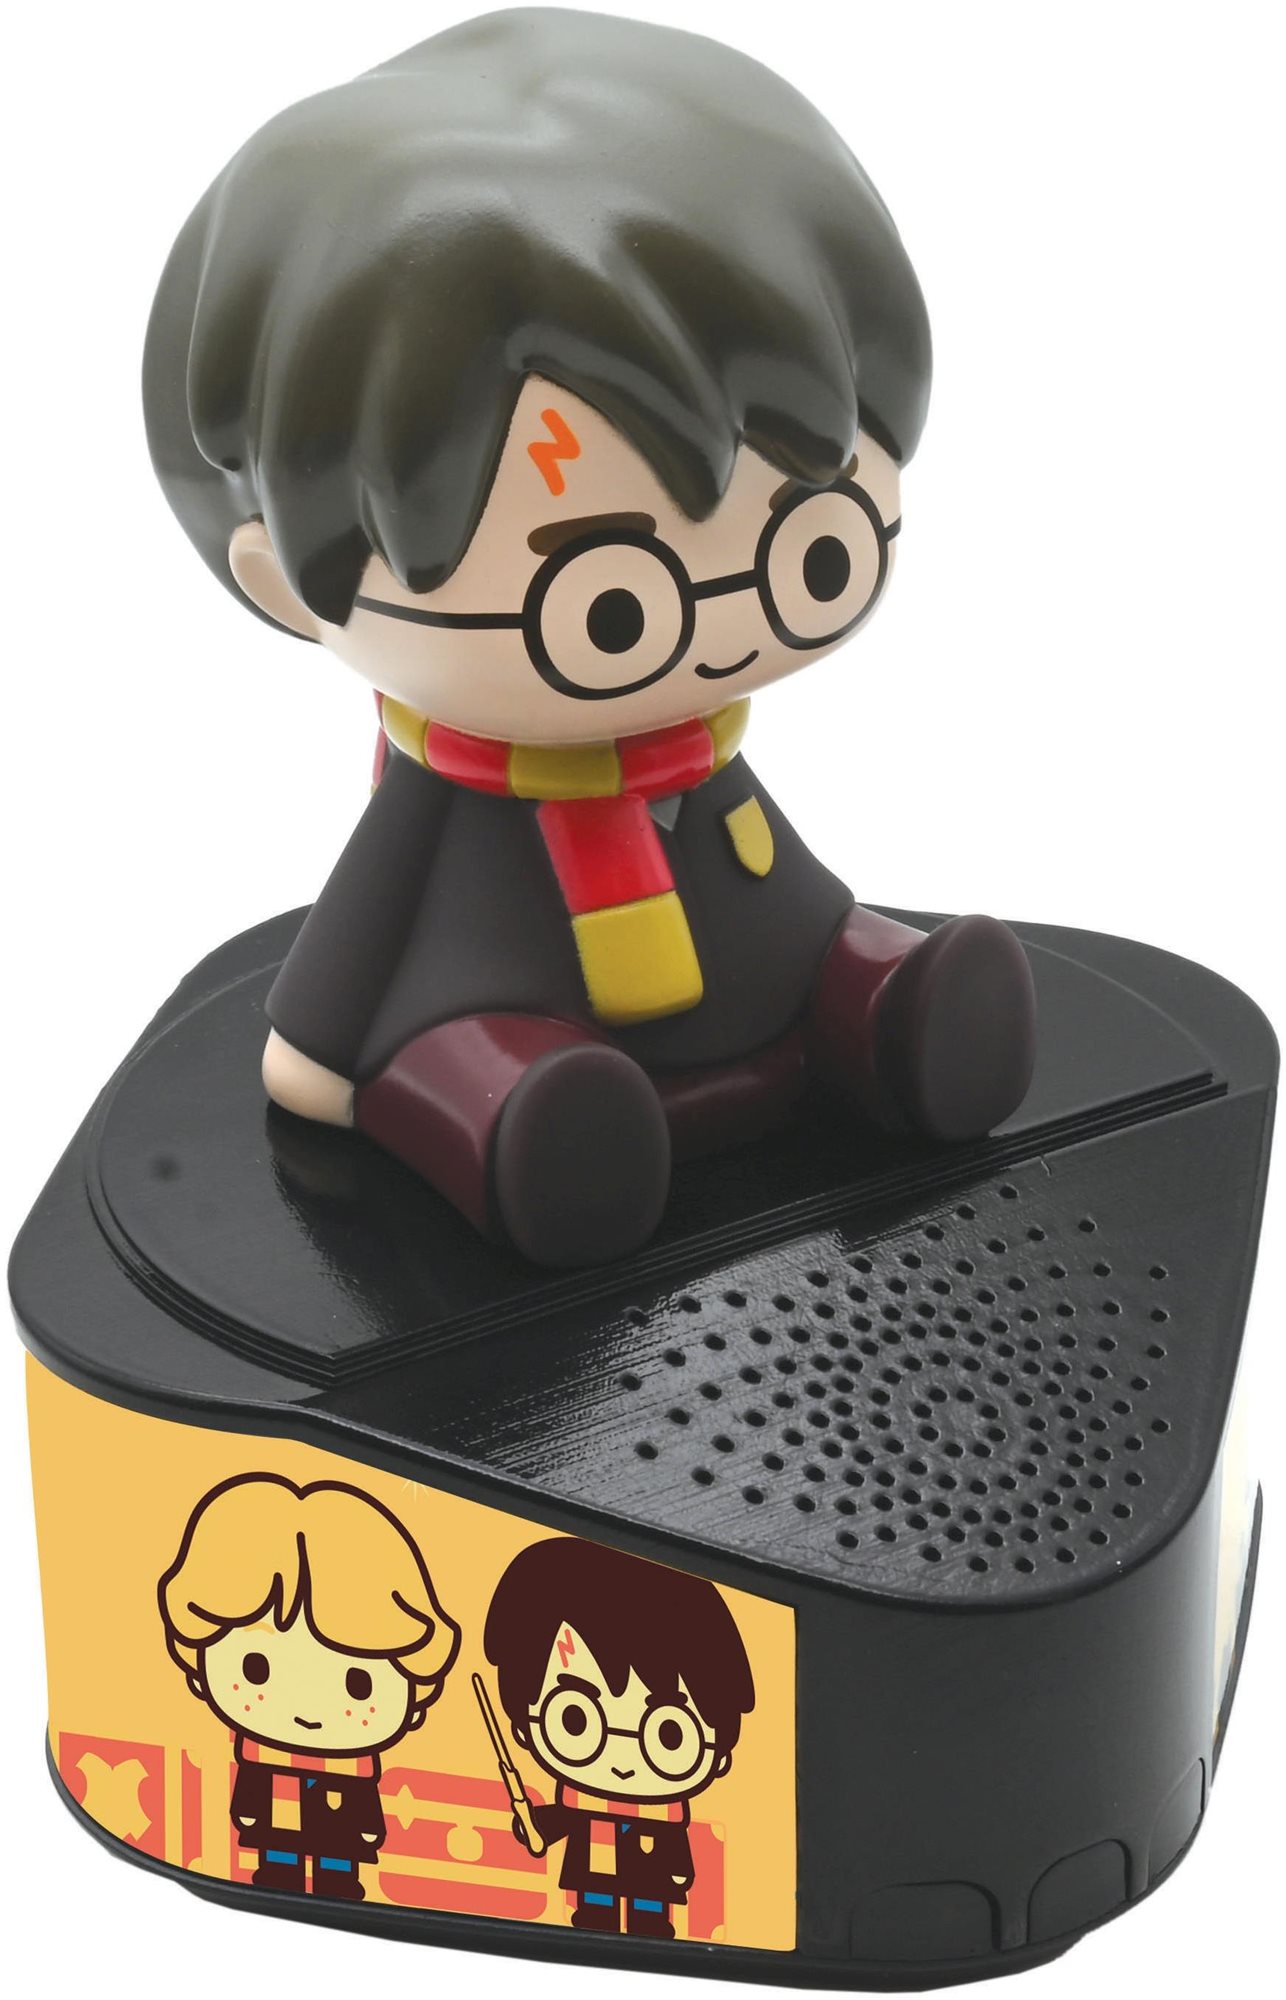 Lexibook Bluetooth hangszóró világító Harry Potter figurával